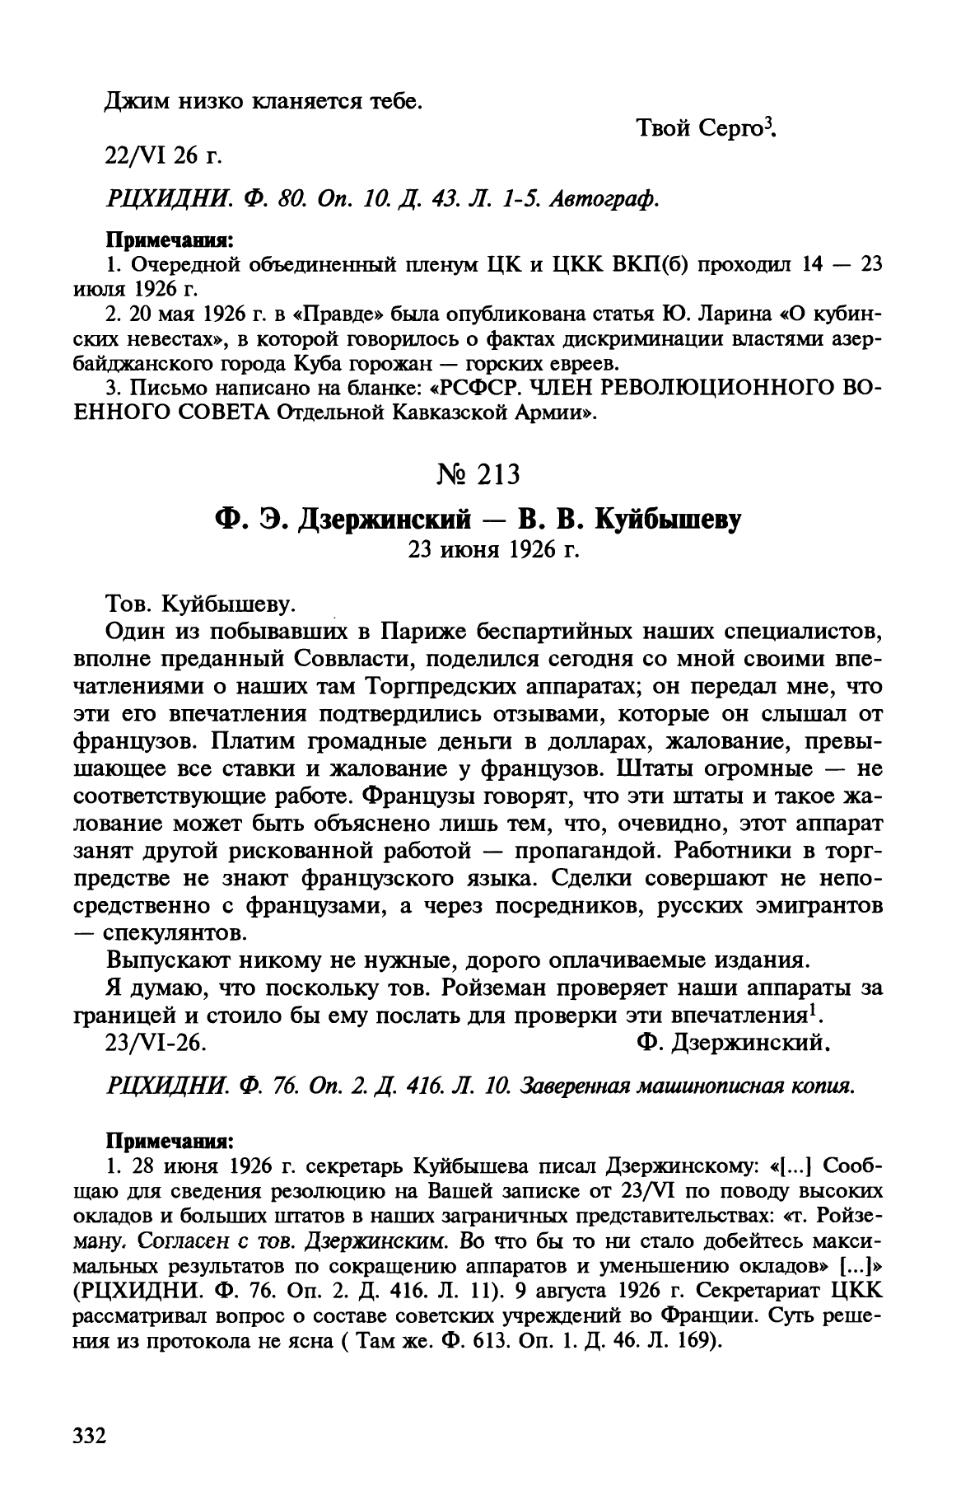 213. Ф. Э. Дзержинский — В. В. Куйбышеву. 23 июня 1926 г.